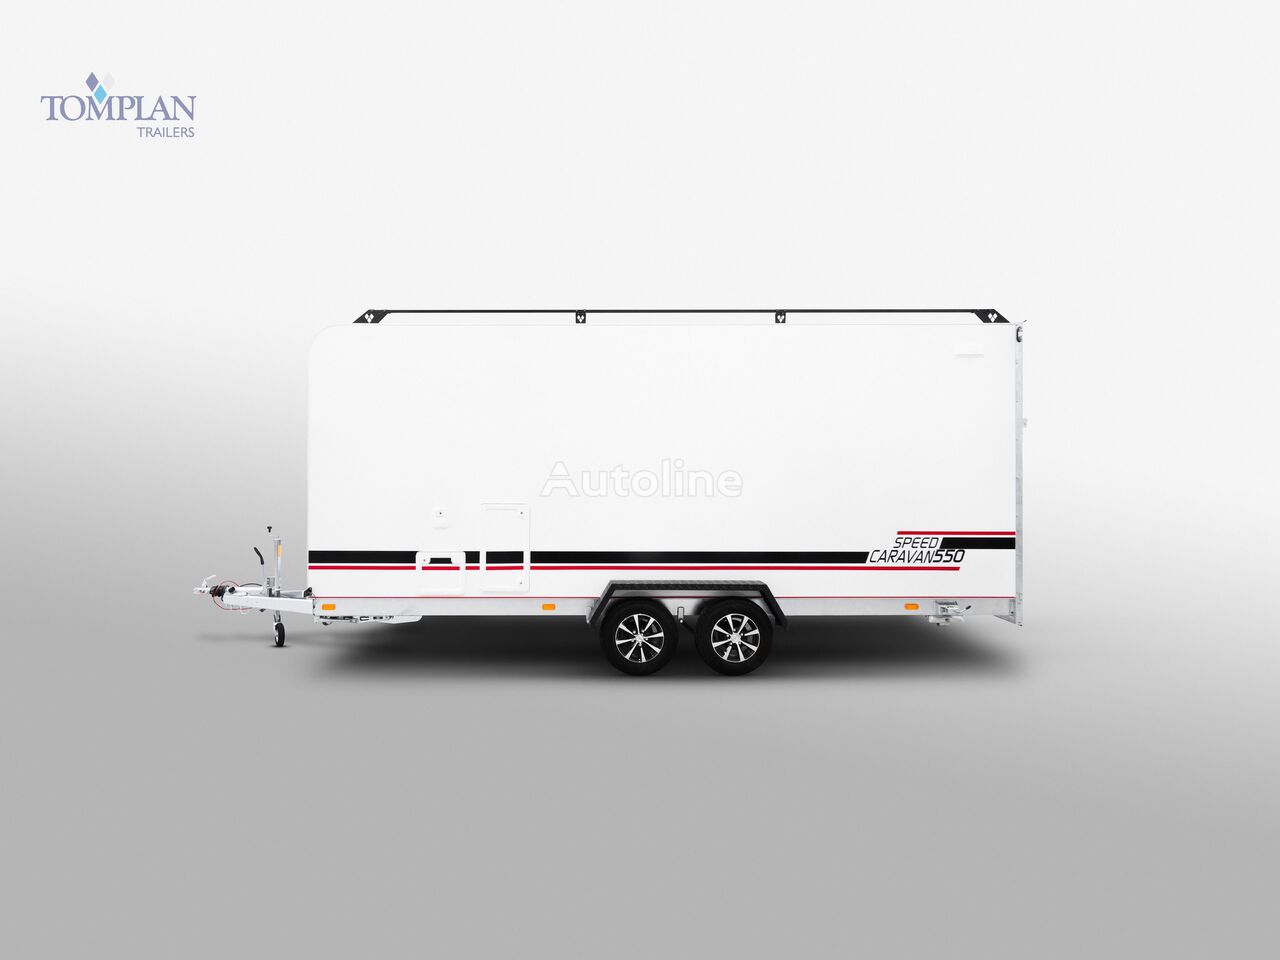 جديد كارافان Tomplan Caravan Cargo Trailer 550x200x210